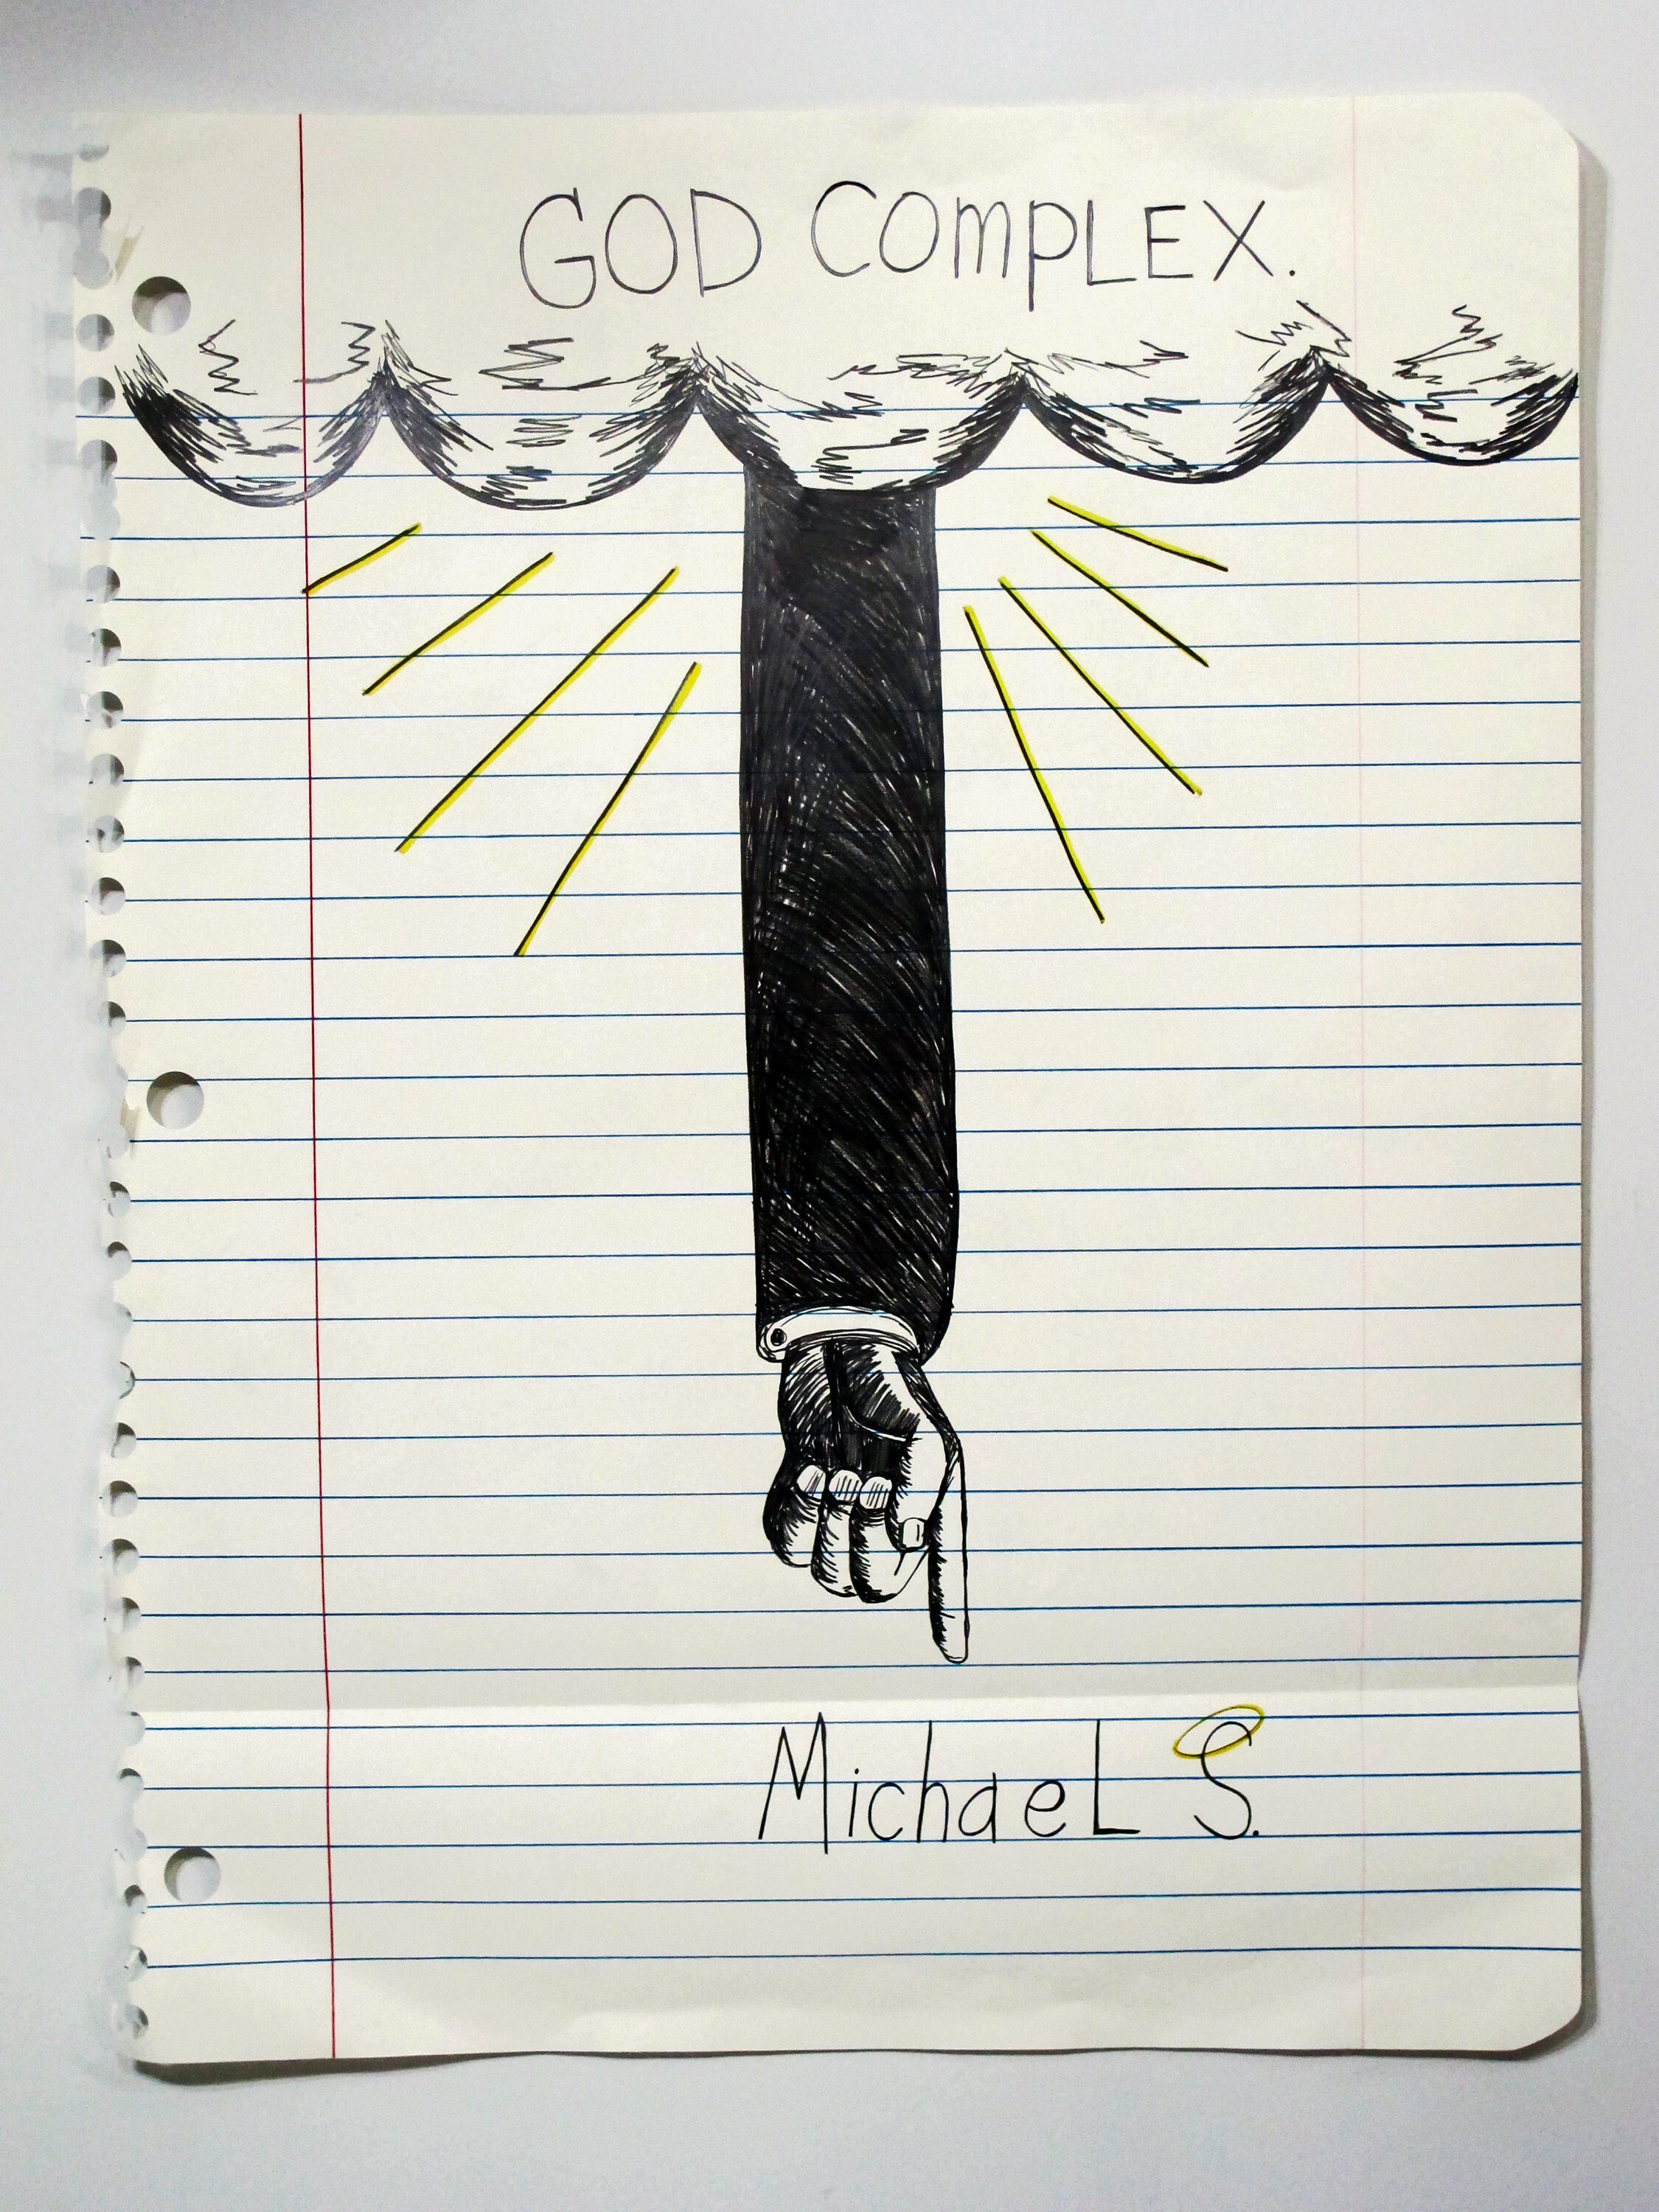   Michael Scoggins ,    God Complex , 2014. Graphite, marker, colored pencil on paper , 67 x 51 in. 